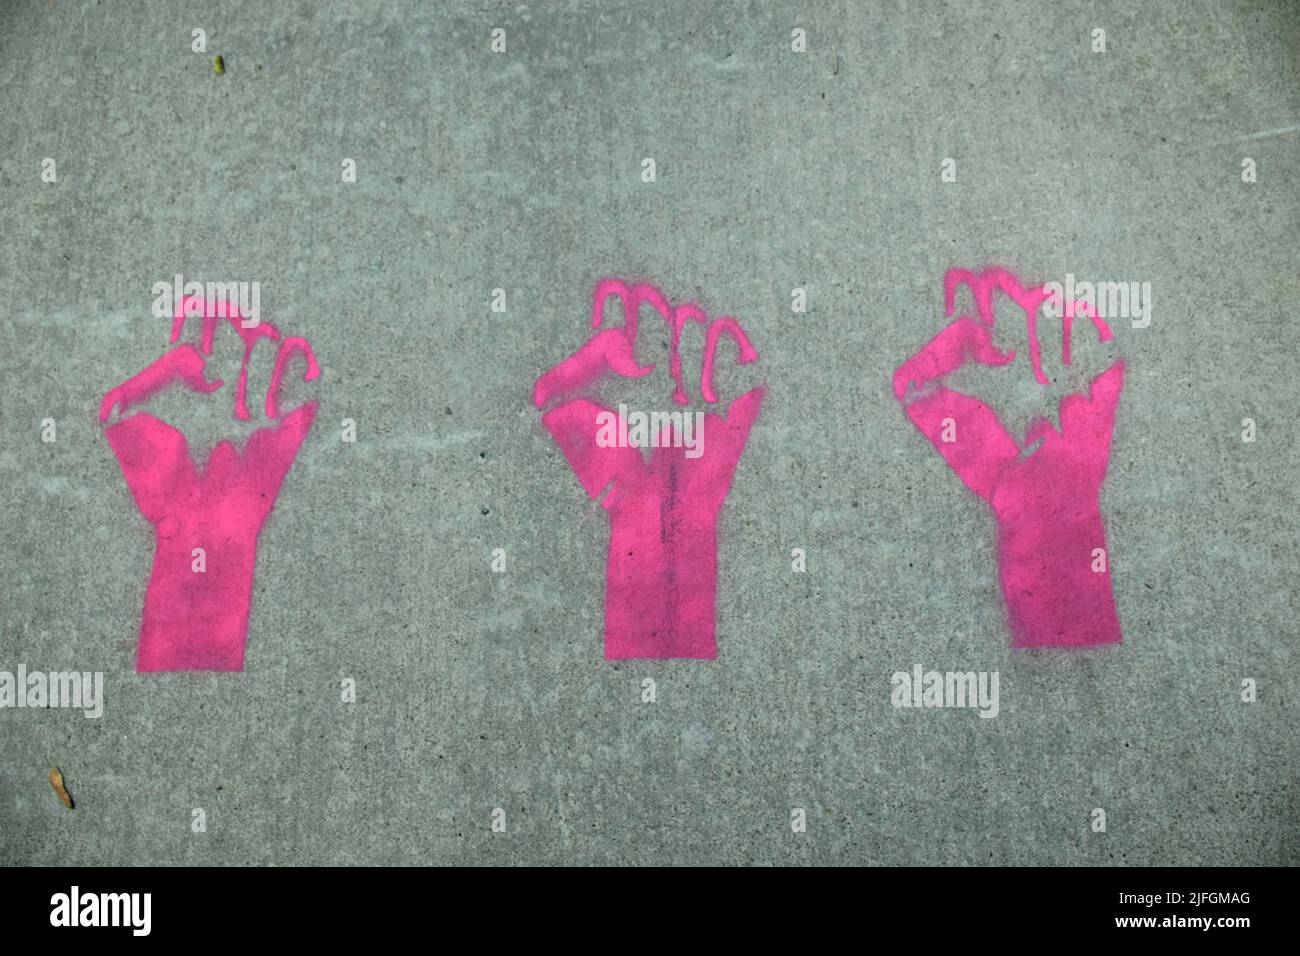 Three fists painted on sidewalk Stock Photo